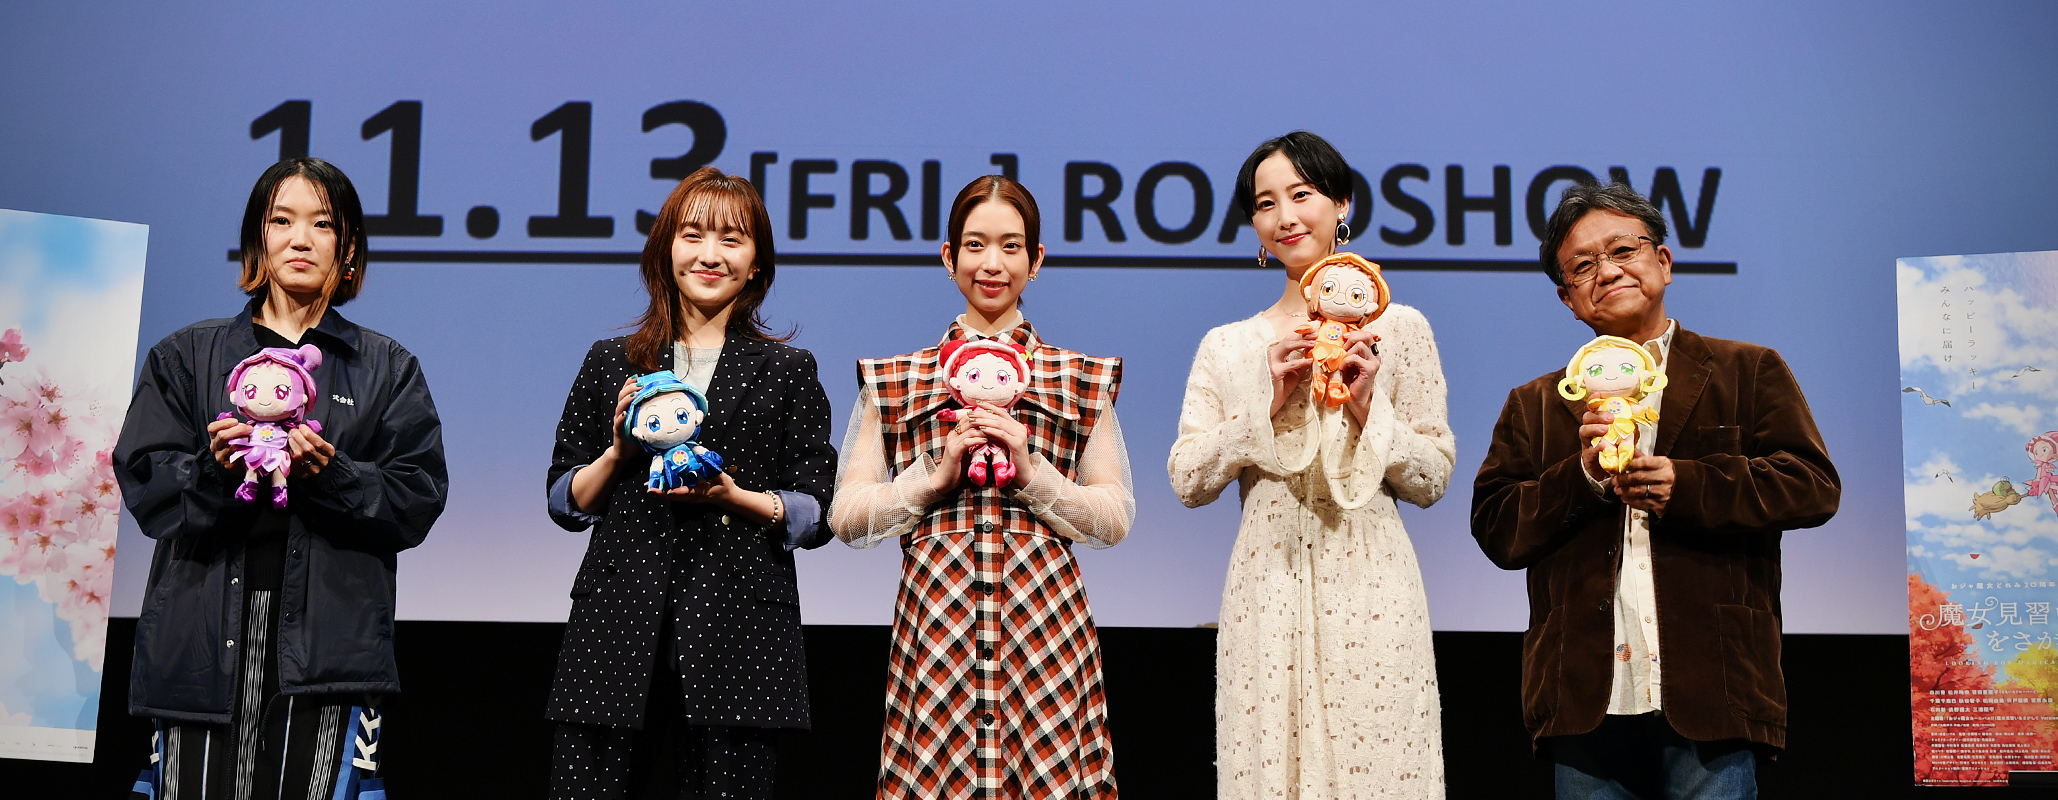 Looking for Magical Doremi (SA) Aoi Morikawa (Actress), Rena Matsui (Actress), Kanako Momota (Actress / Momoiro Clover Z)
Junichi Sato (Director), Haruka Kamatani (Director)